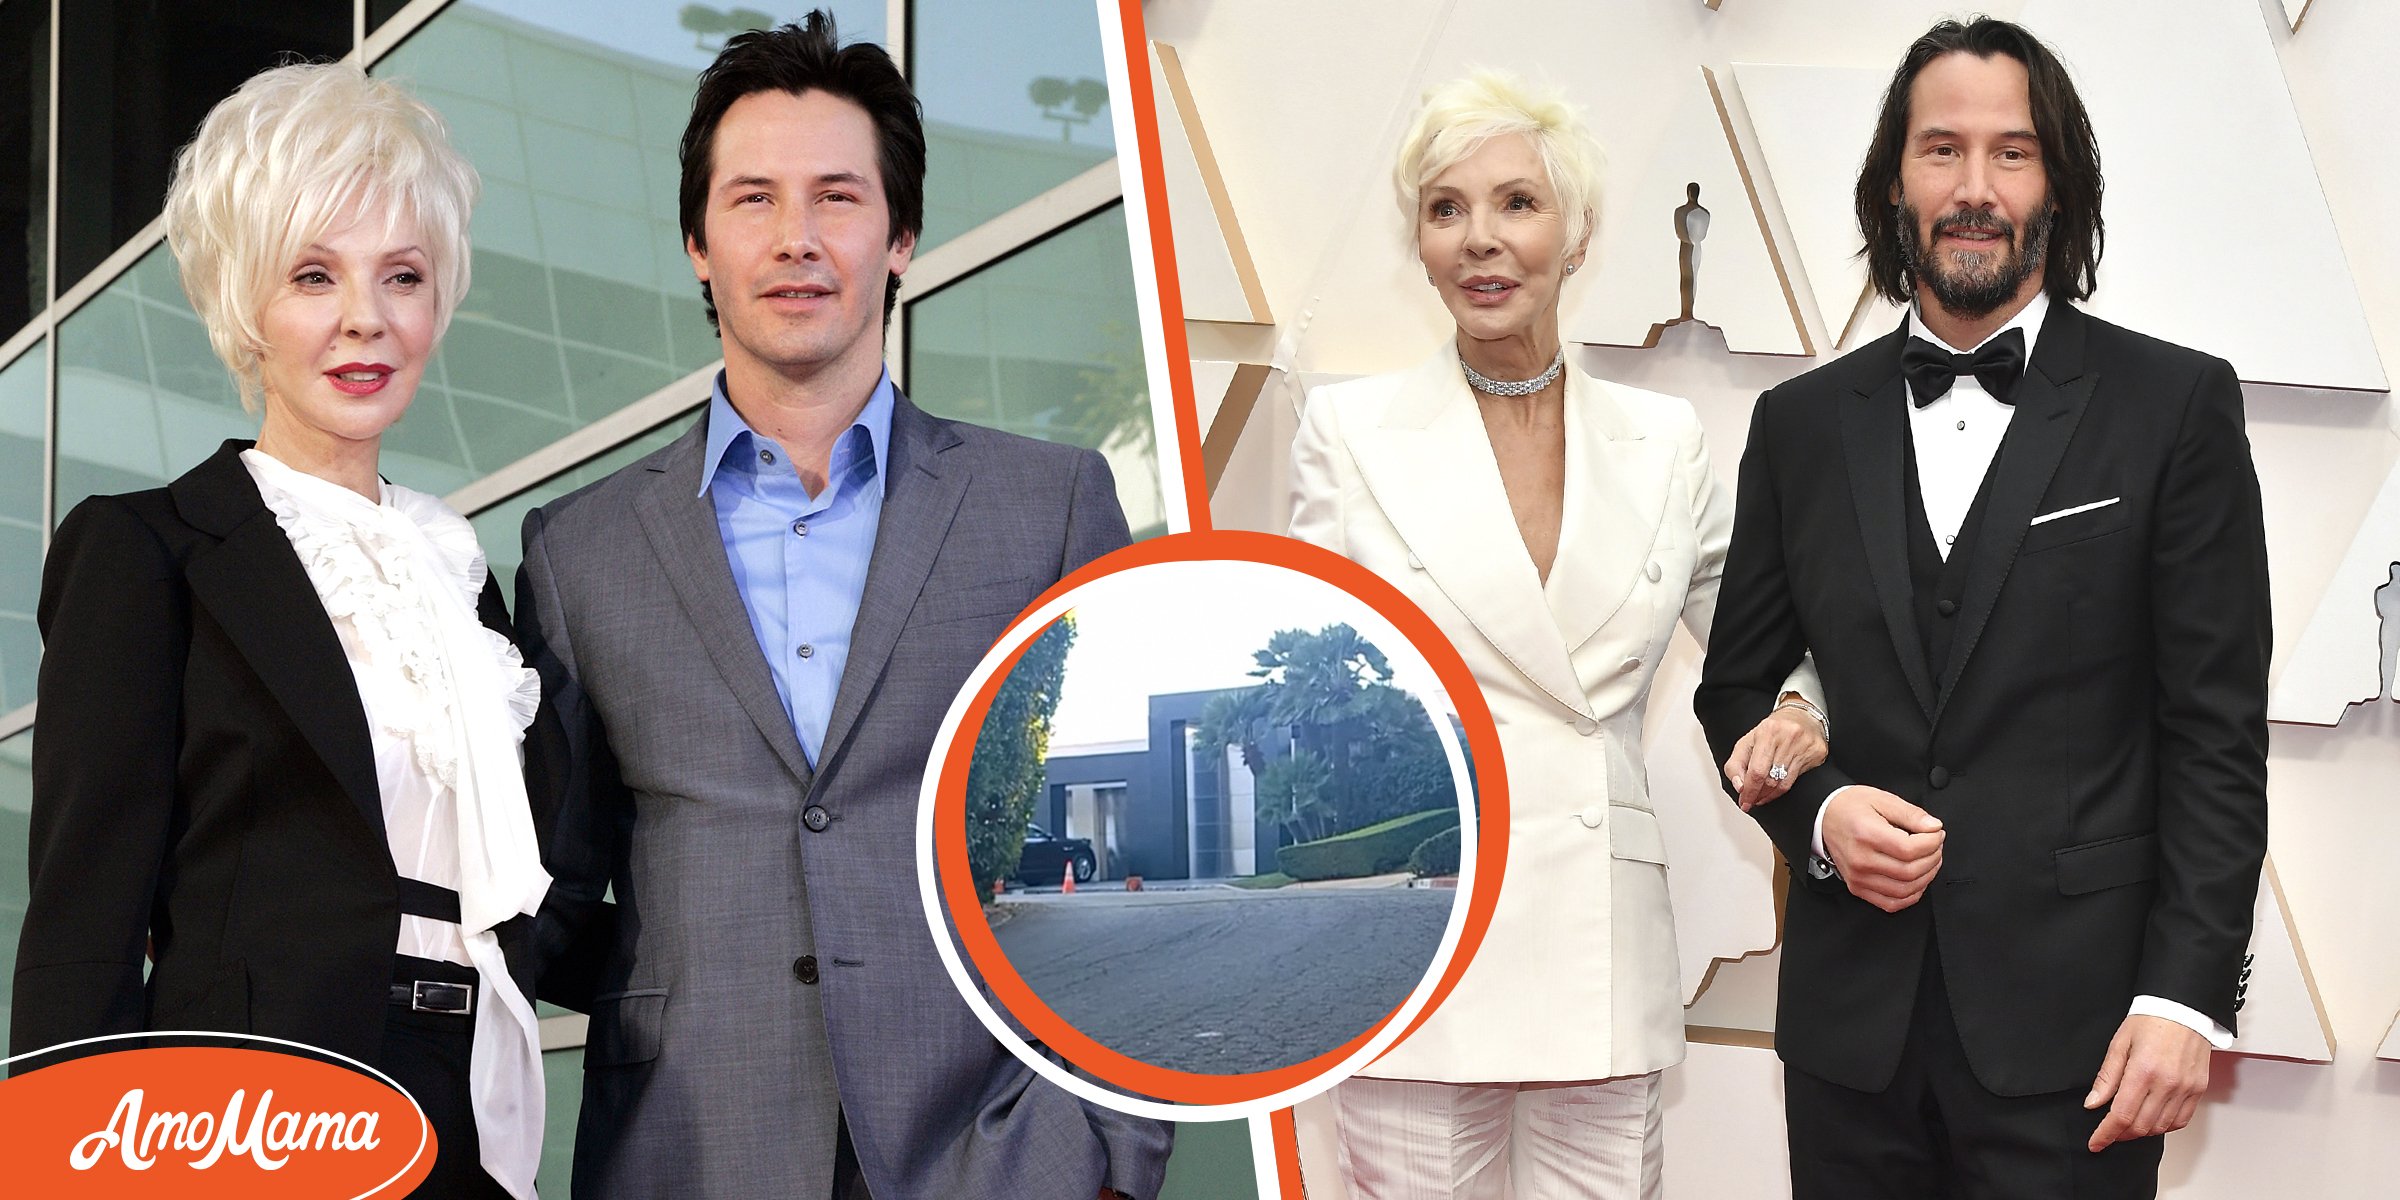 Keanu Reeves a acheté à sa mère une maison avant de s’en acheter une pour lui – elle a soutenu son rêve de devenir acteur